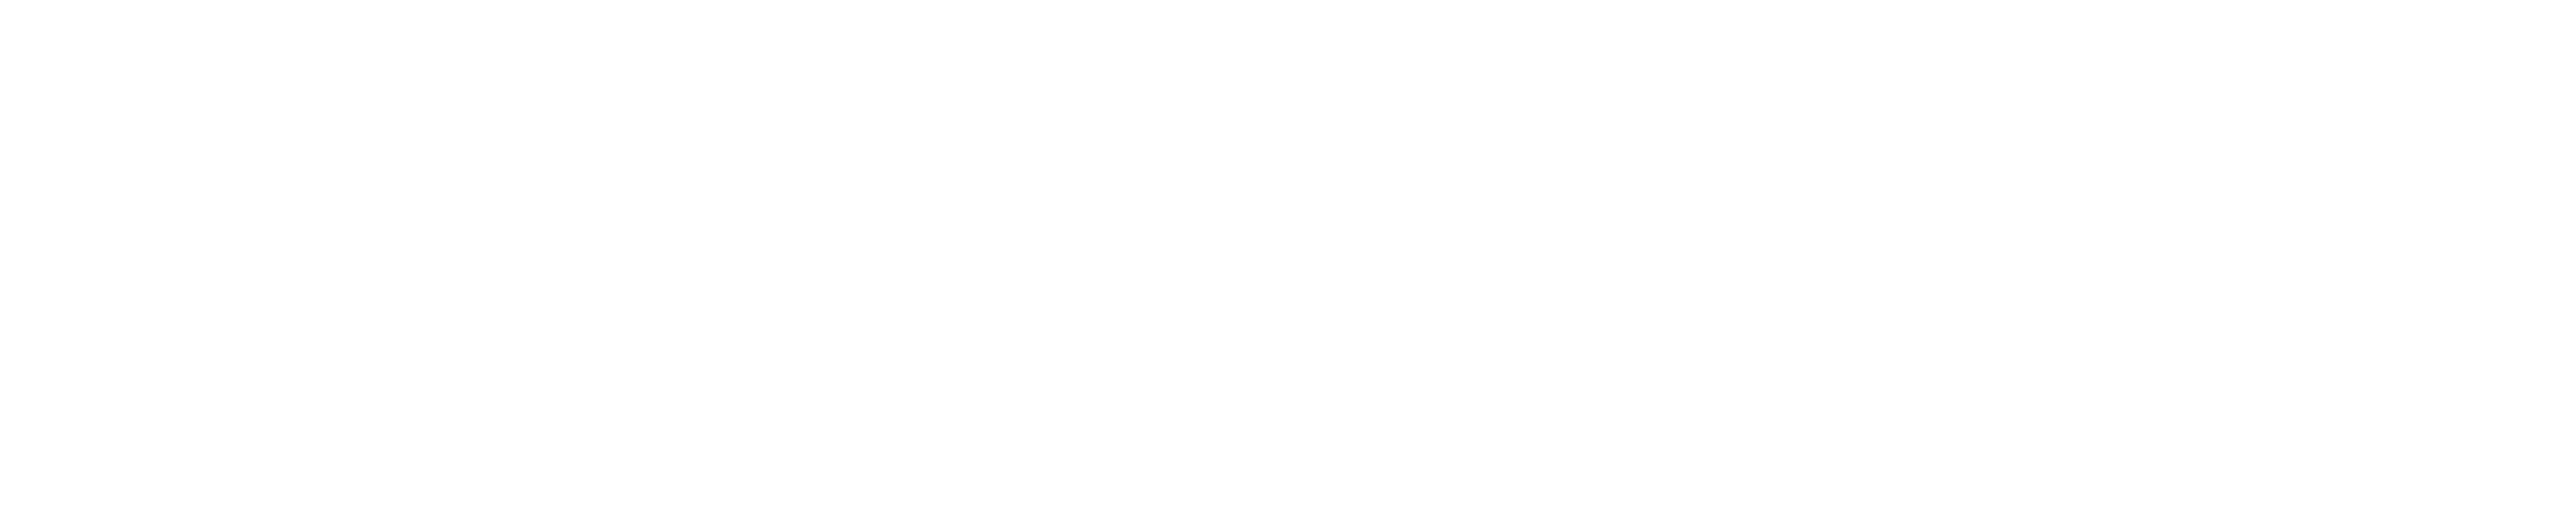 omh-logo-white